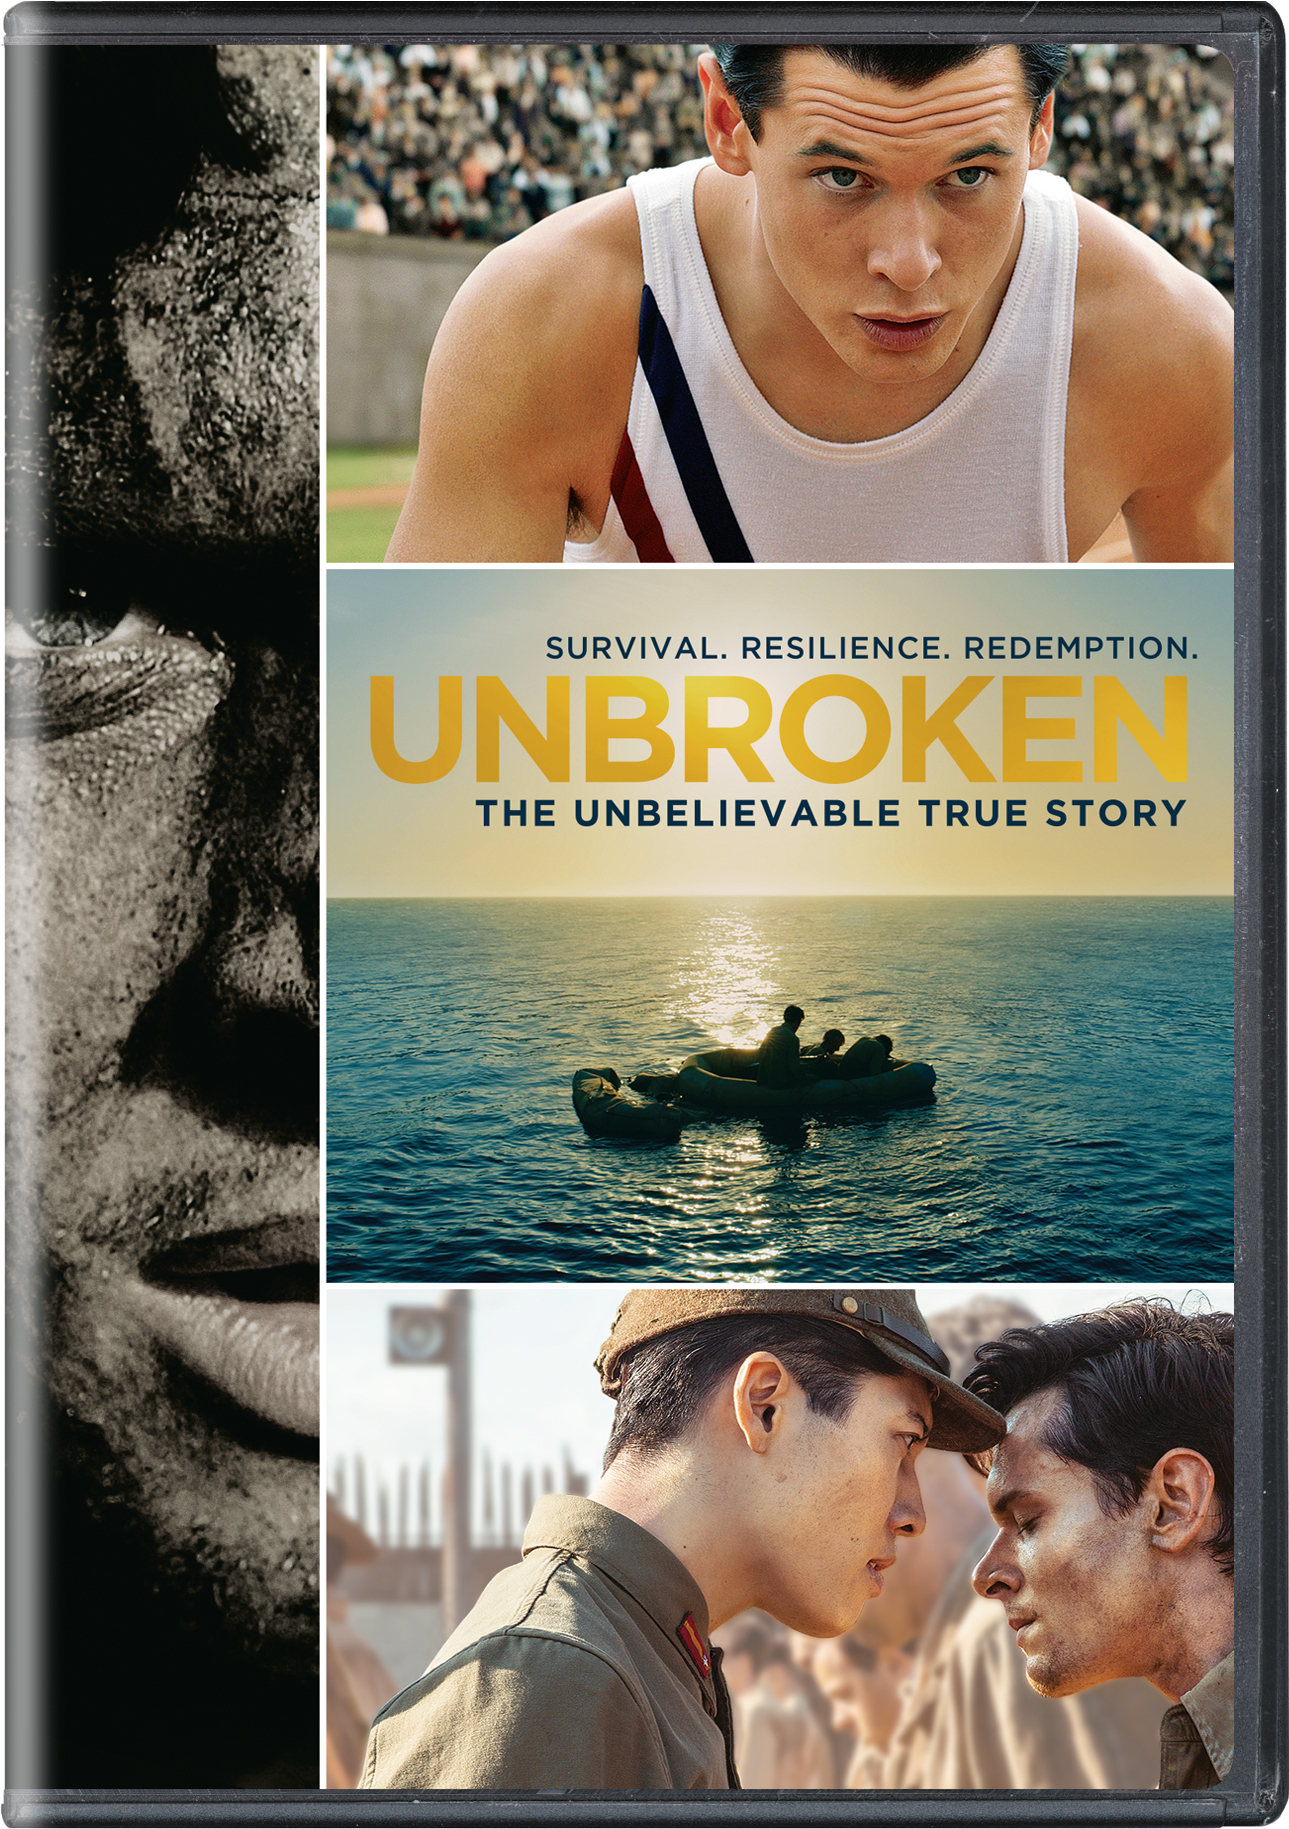 Unbroken - DVD [ 2014 ]  - War Movies On DVD - Movies On GRUV